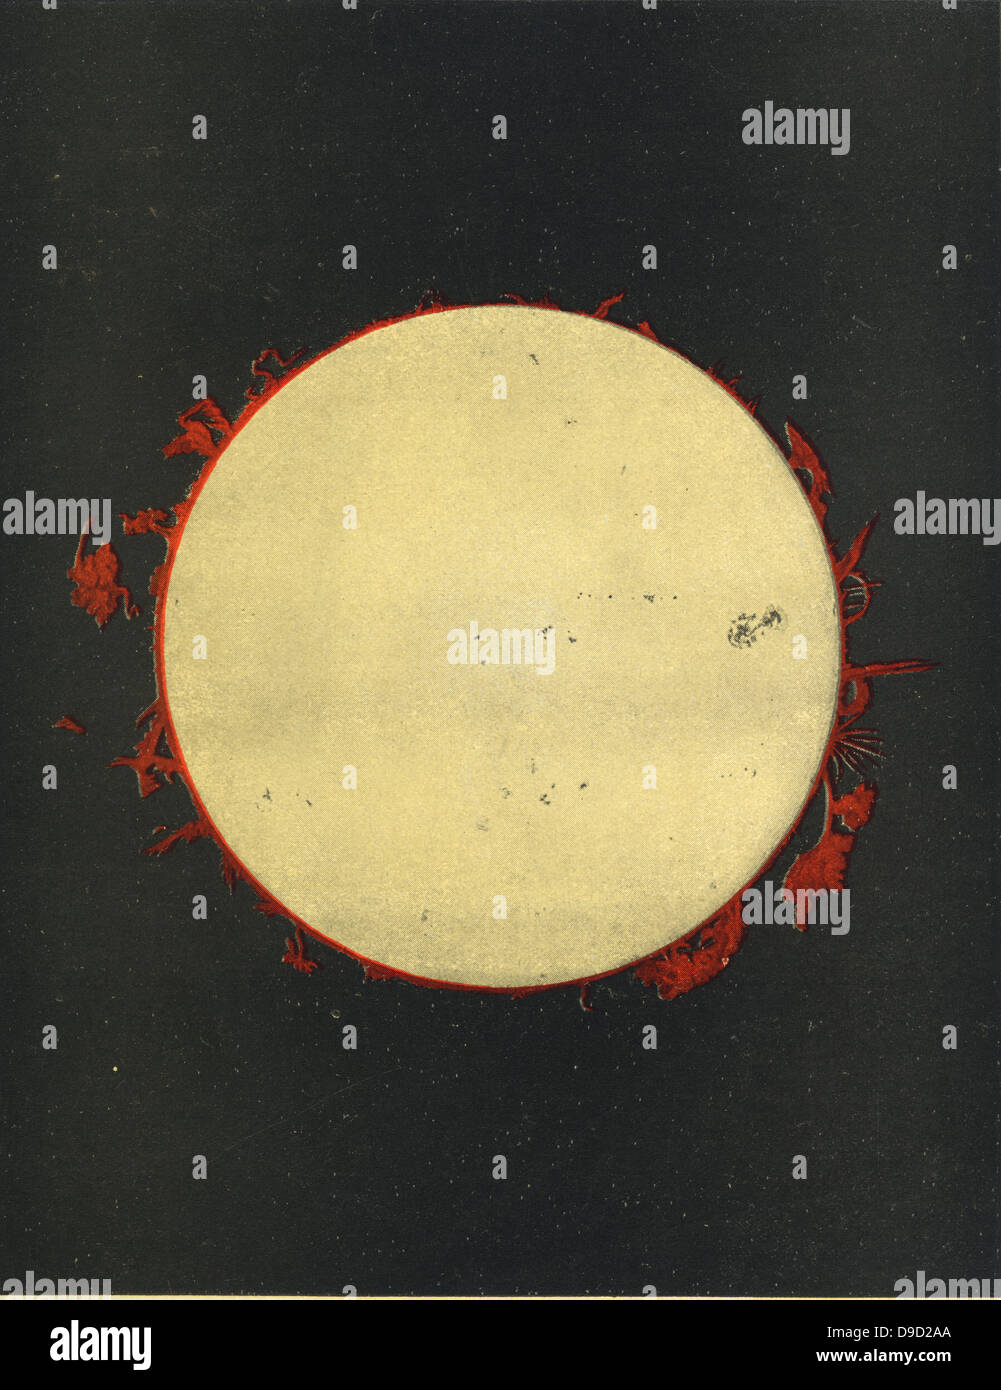 Observations du soleil faites à l'Observatoire de l'Université de Harvard, Cambridge, Massachusetts, USA au cours de 1873, montrant les protubérances et taches solaires. Chomolithograph. Banque D'Images